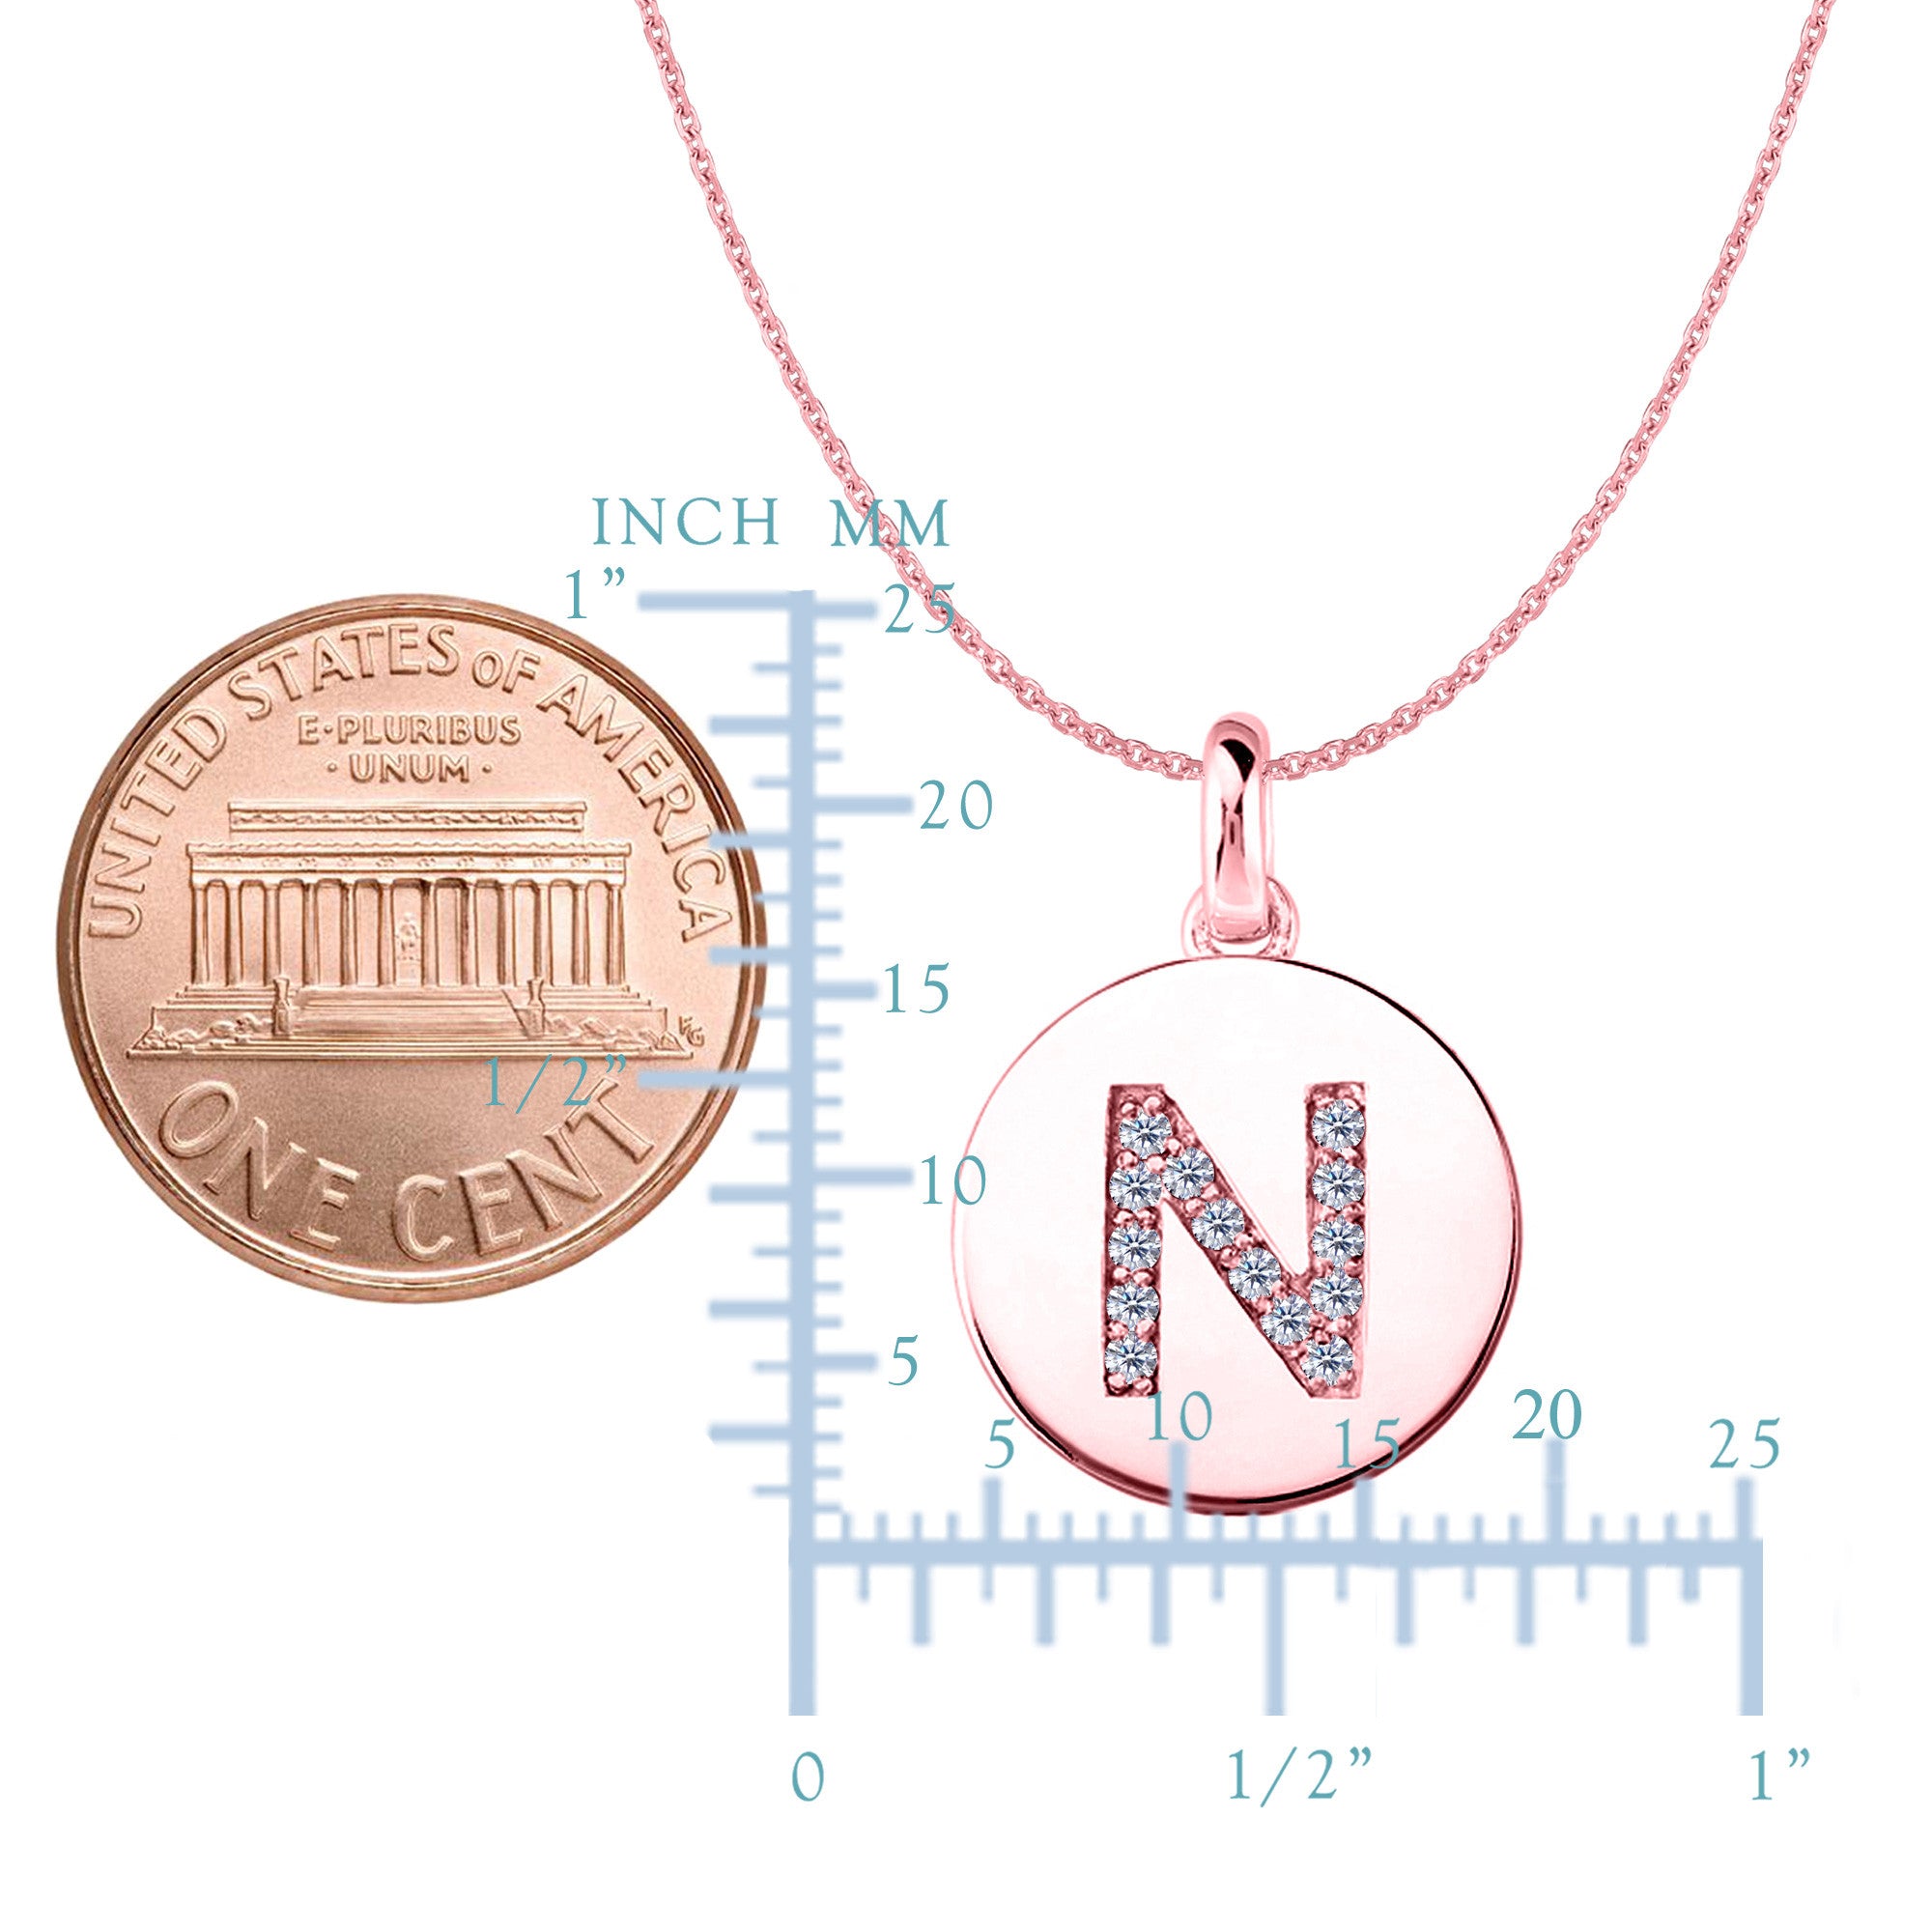 Colgante de disco de oro rosa de 14 quilates con inicial de diamante "N" (0,14 quilates), joyería fina de diseño para hombres y mujeres